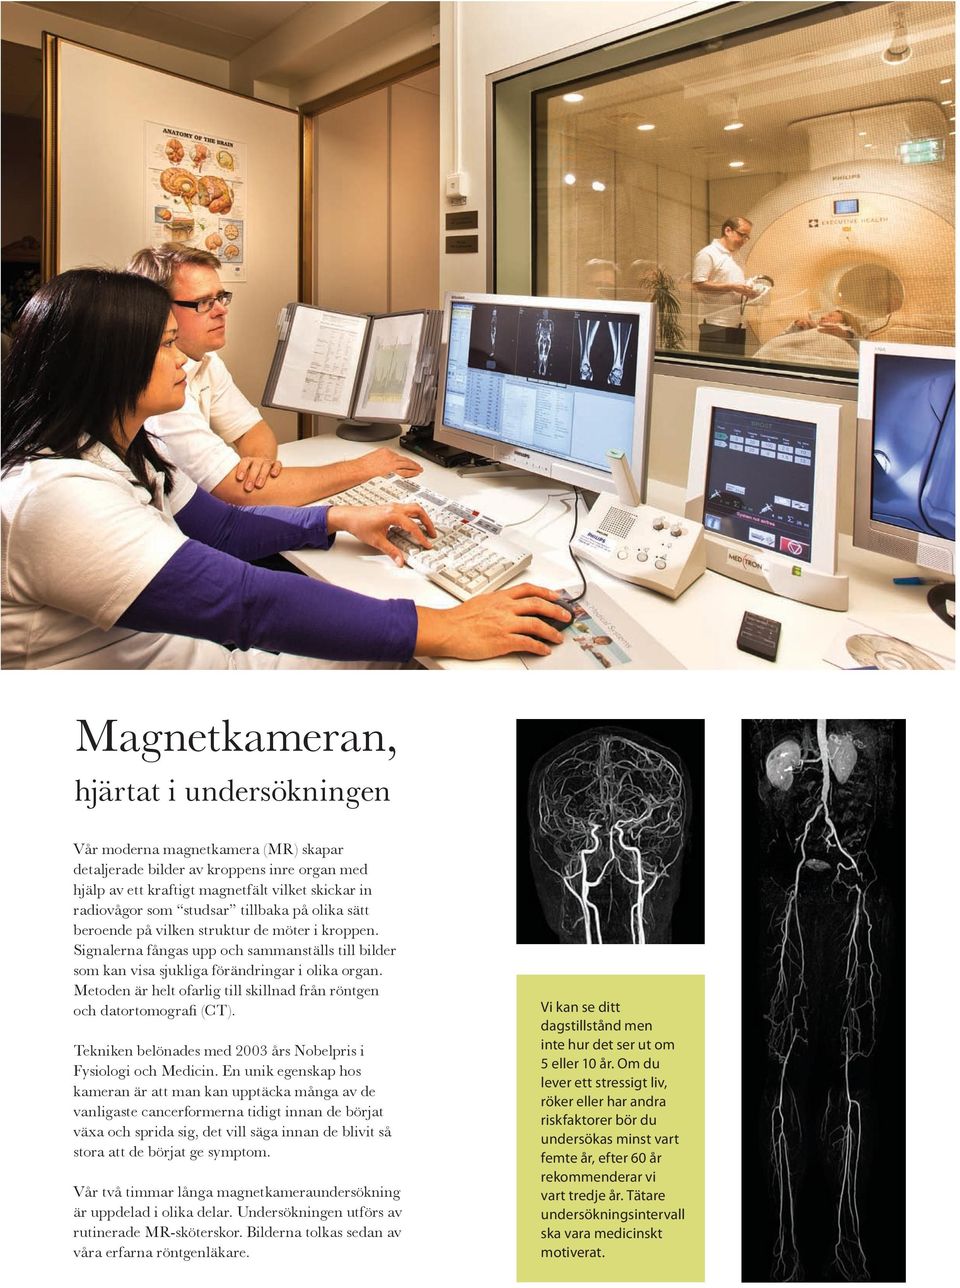 Metoden är helt ofarlig till skillnad från röntgen och datortomografi (CT). Tekniken belönades med 2003 års Nobelpris i Fysiologi och Medicin.